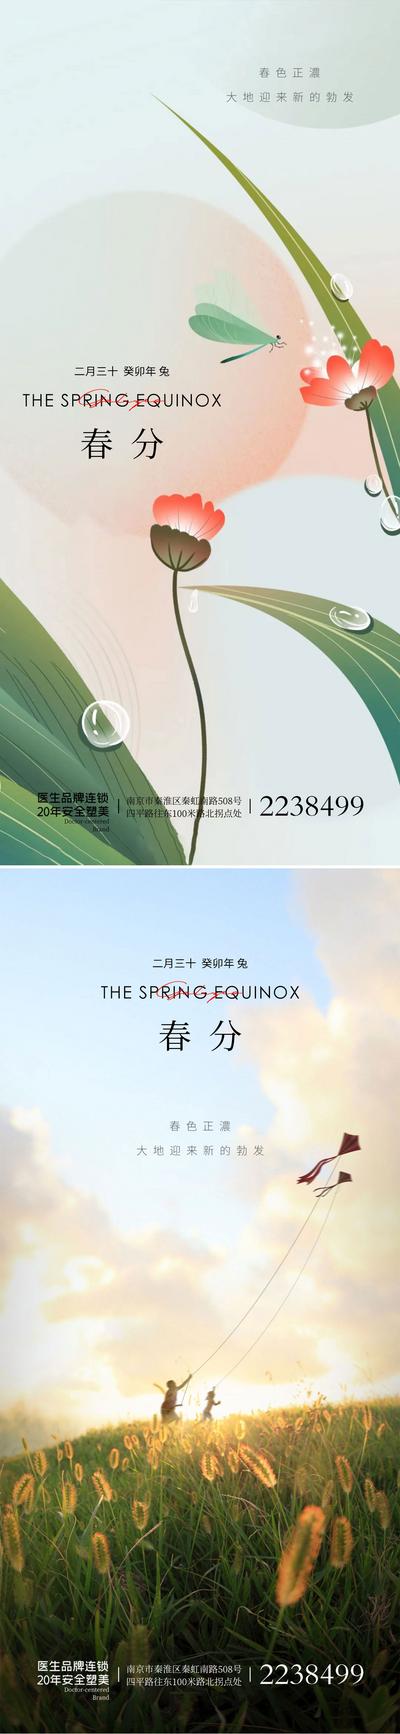 南门网 广告 海报 节气 春分 系列 插画 风筝 鲜花